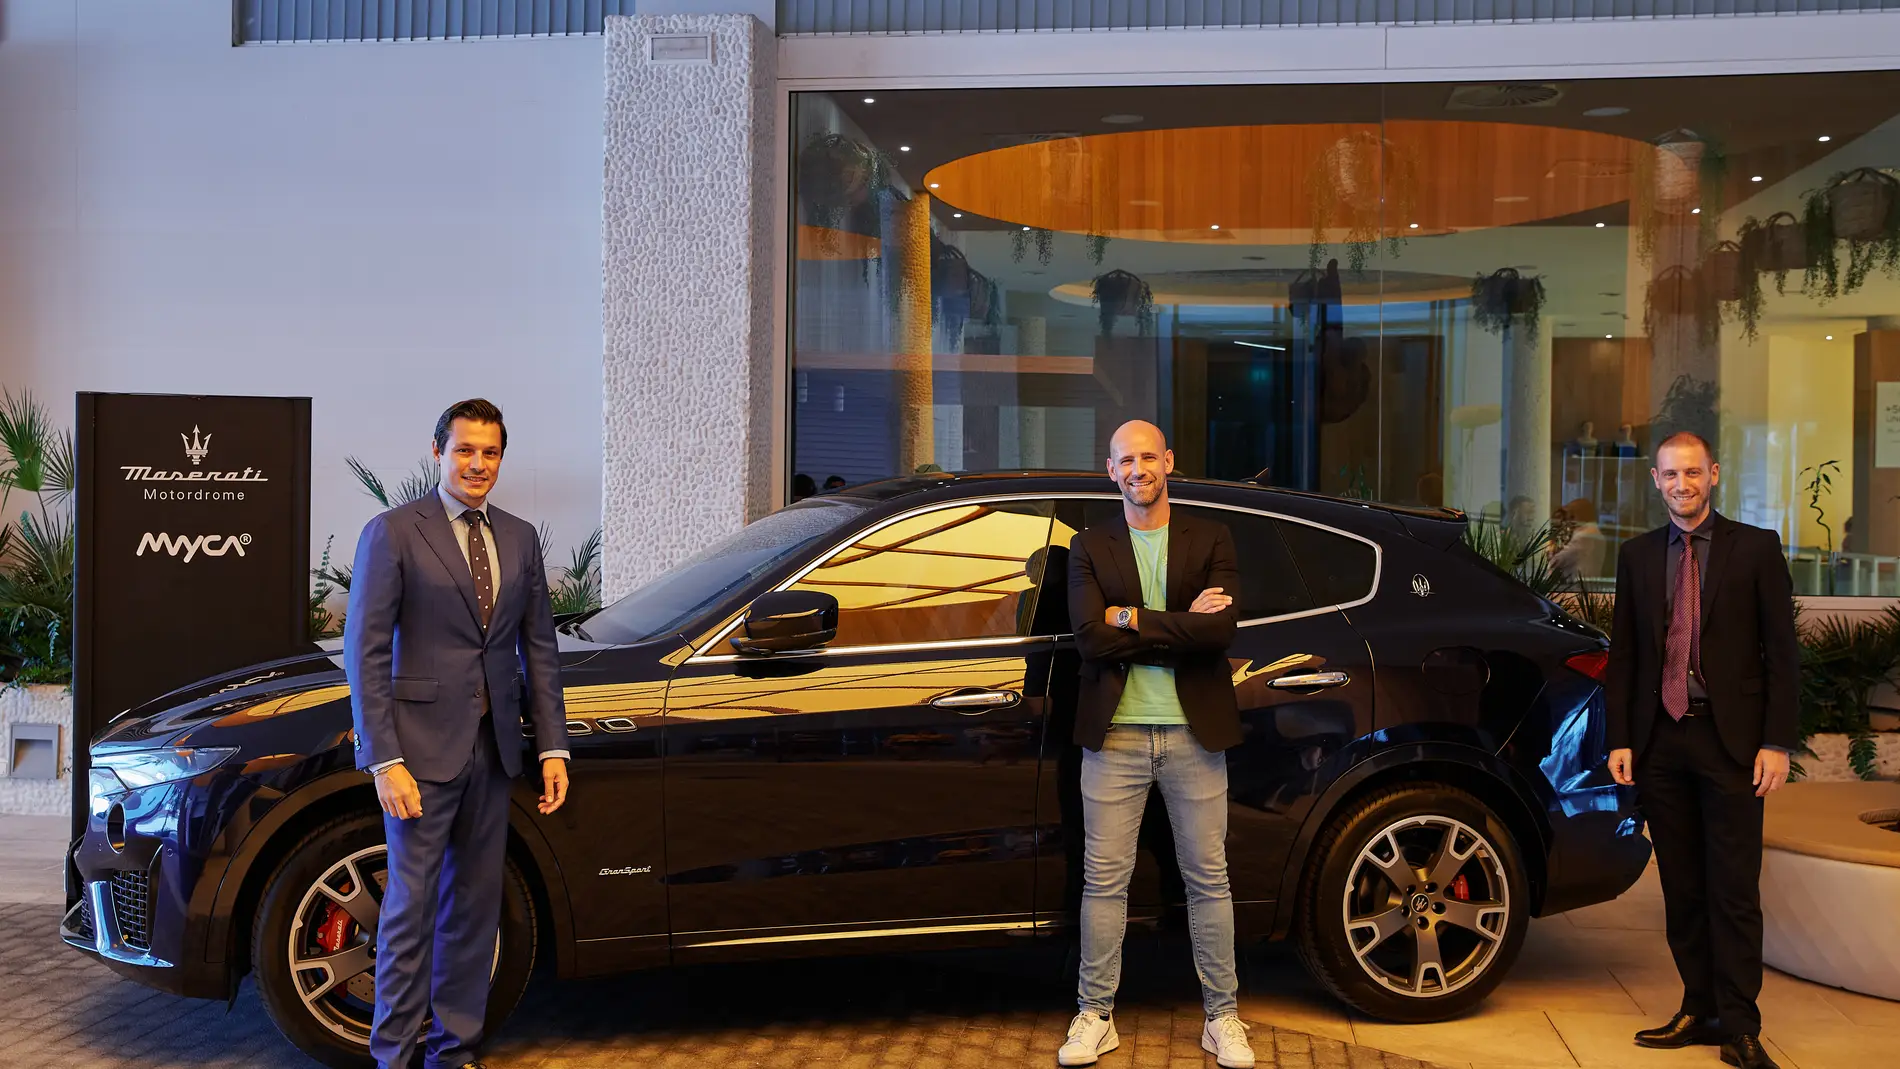 Myca y Motodrome hacen entrega de un Maserati al presentador Gonzalo Miró